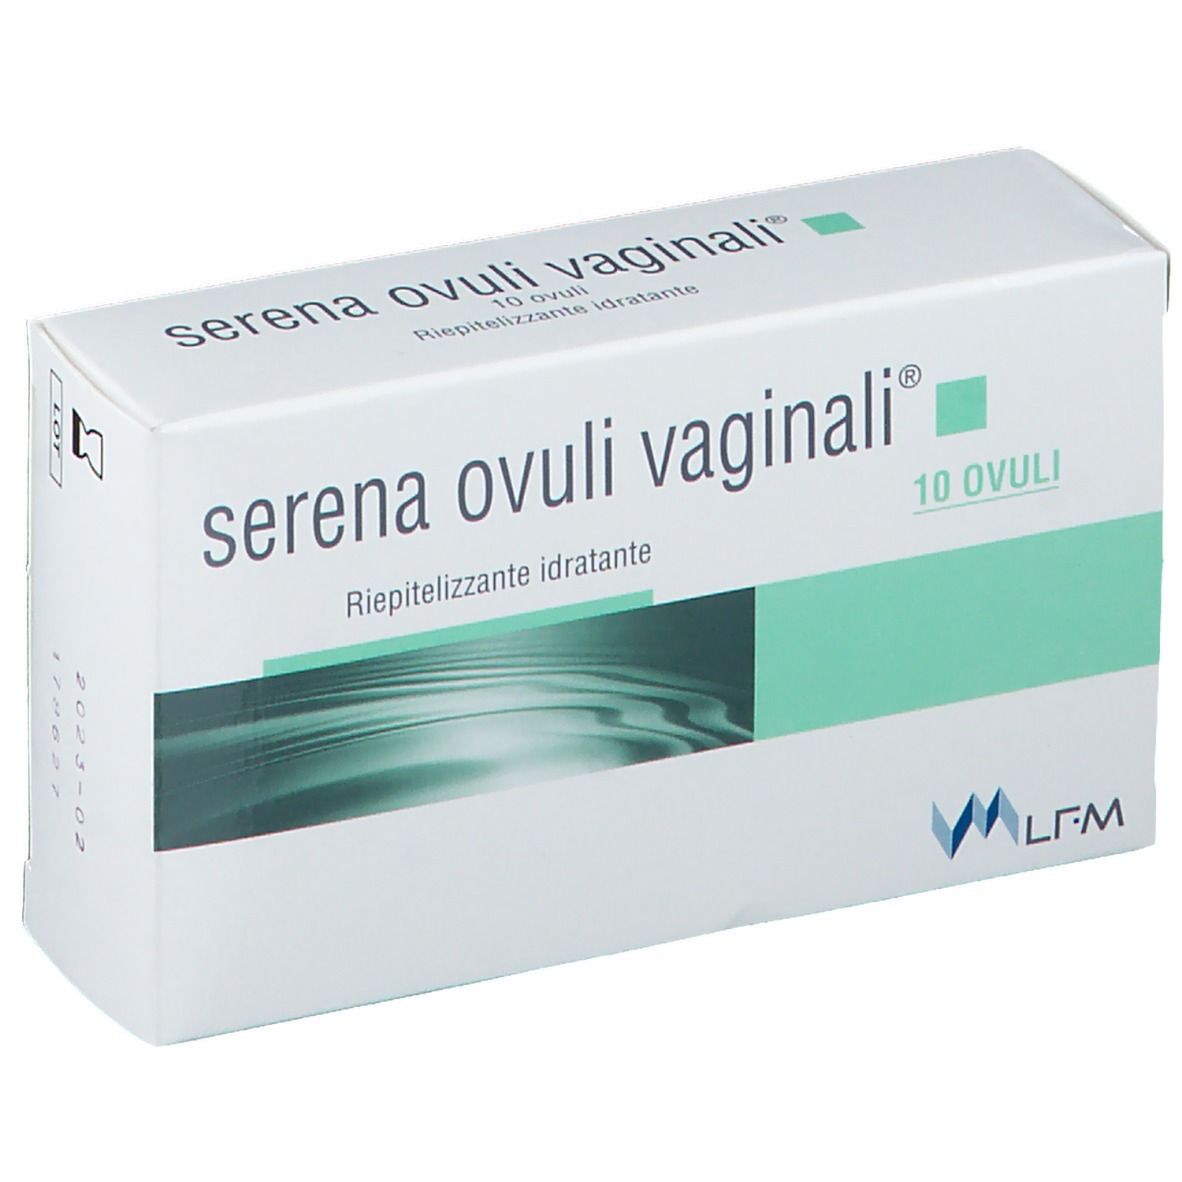 Image of Serena Ovuli Vaginali®